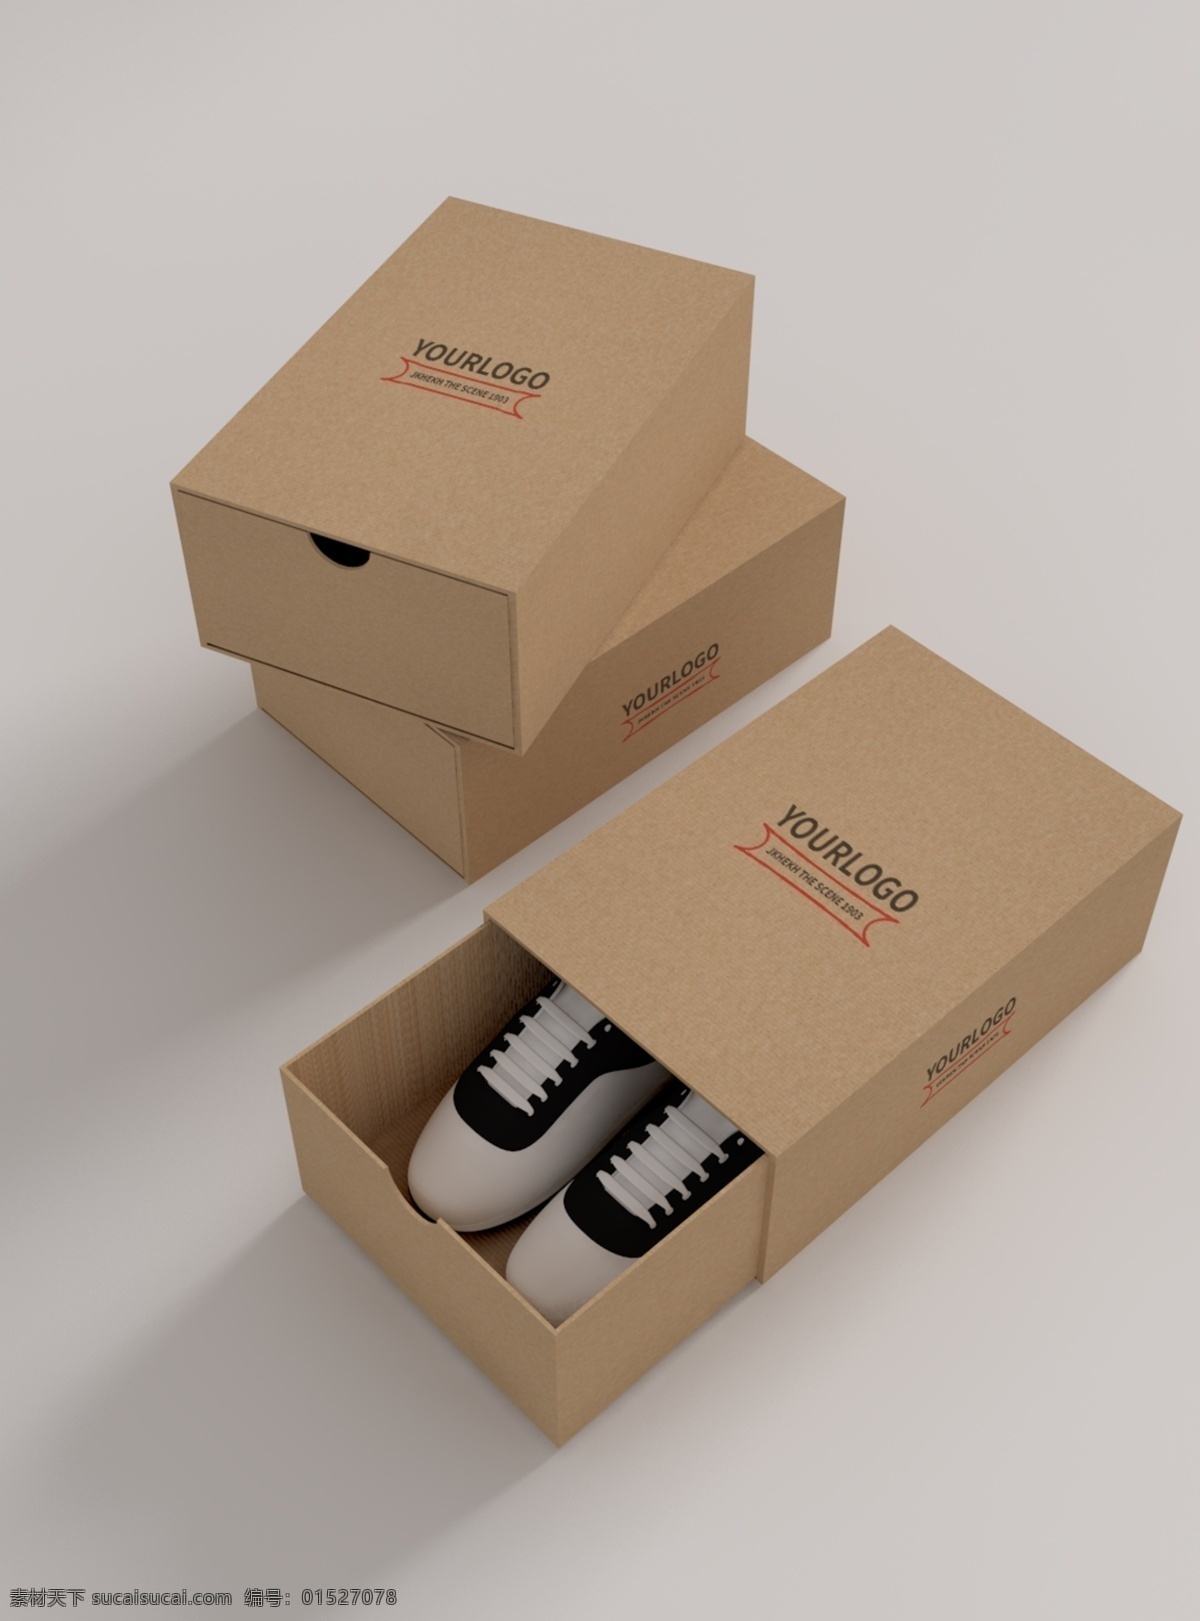 原创 模型 鞋盒 logo 贴图 样机 牛皮纸 智能图层 mockup 盒子 包装 抽屉式 包装样机